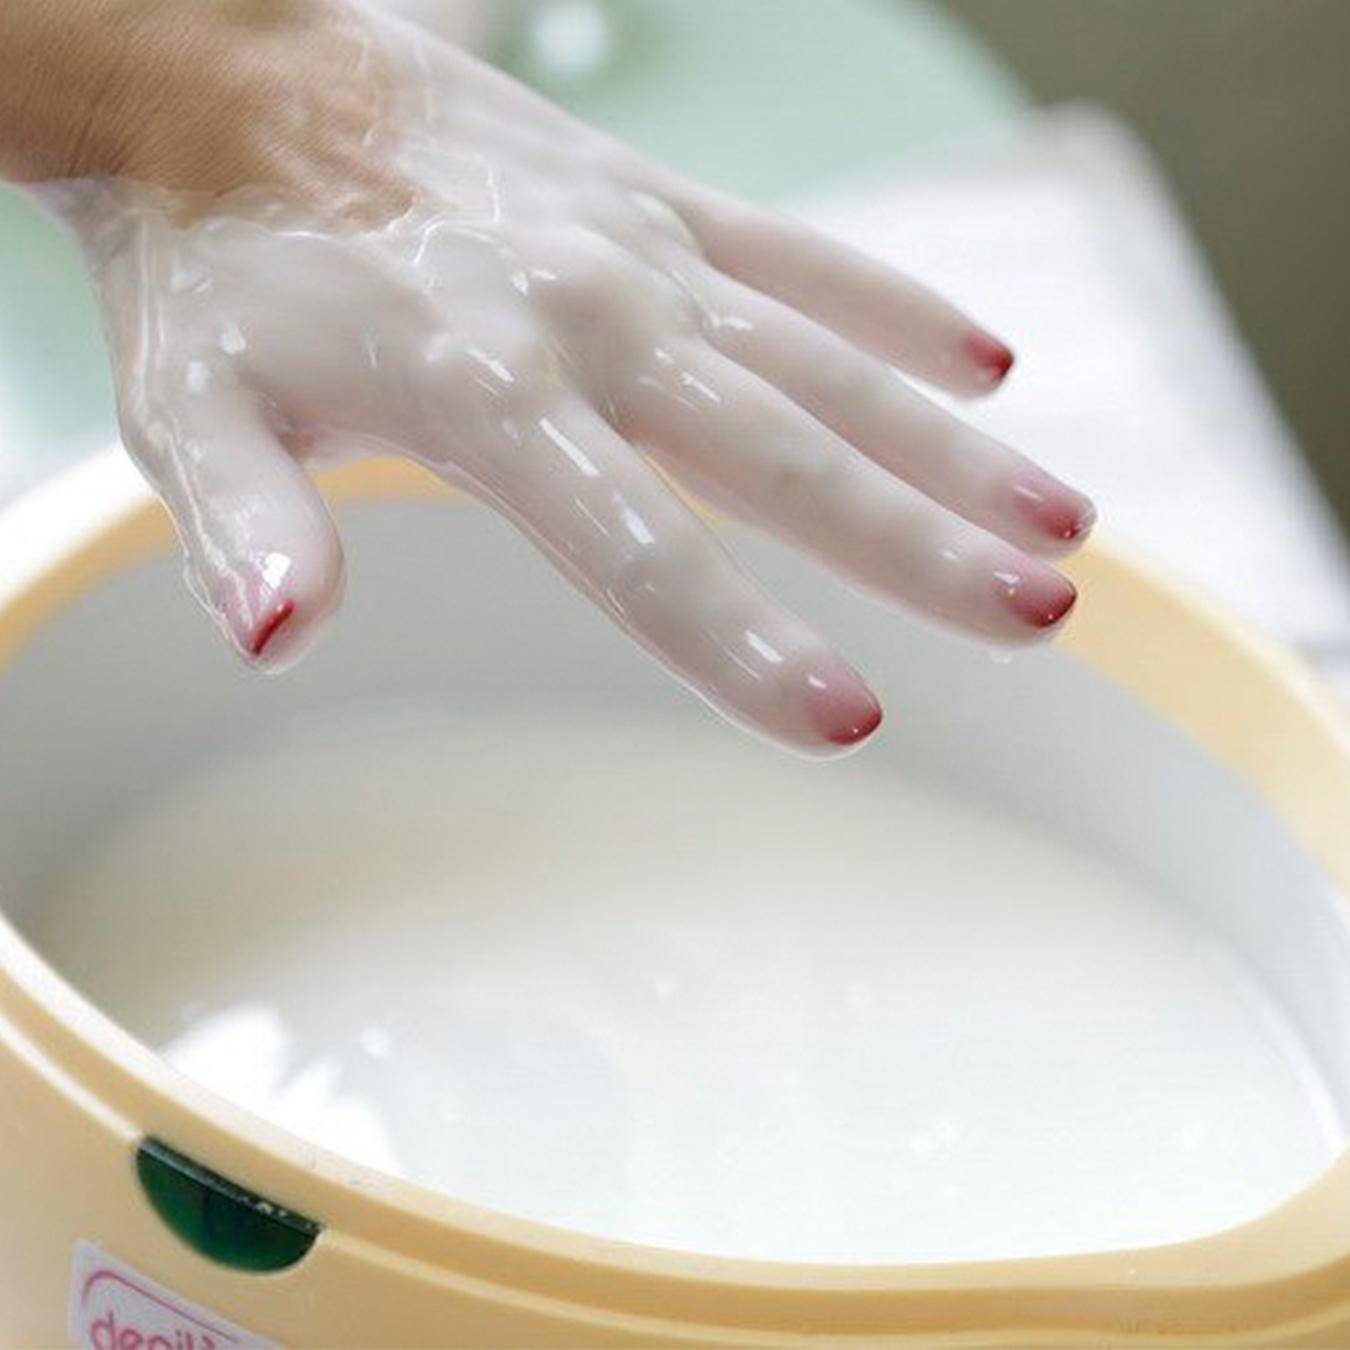 30 рецептов масок для рук в домашних условиях • журнал nails